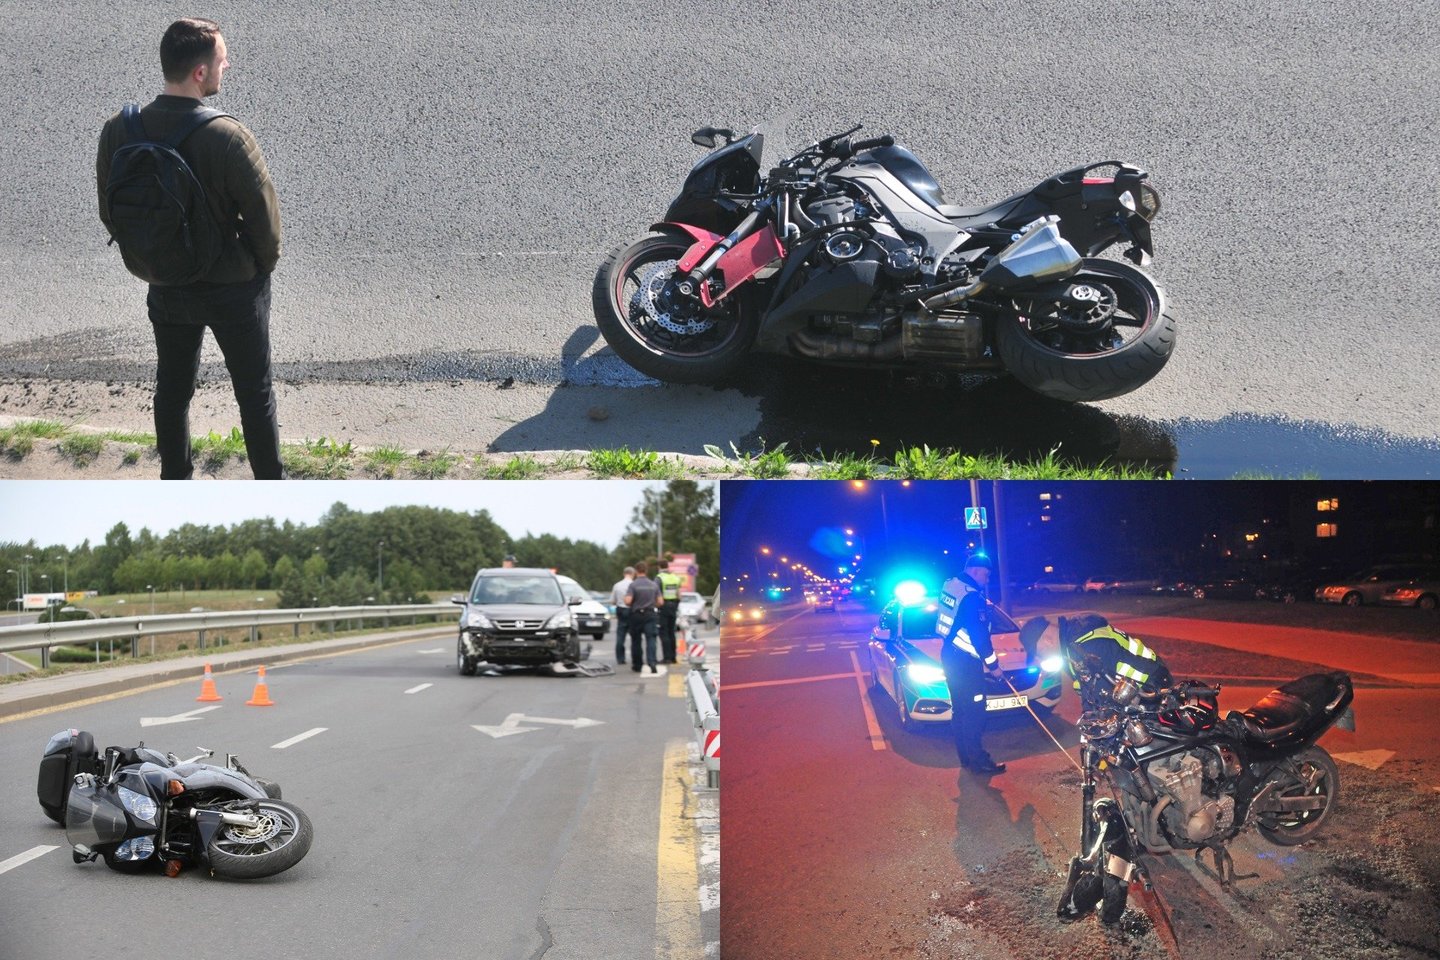 Nors motociklų sezonas prasidėjo vos prieš kelis mėnesius, tačiau eismo įvykių statistika neraminanti: vien gegužės pabaigoje žuvo 2 motociklininkai. <br>Lrytas.lt fotomontažas. 